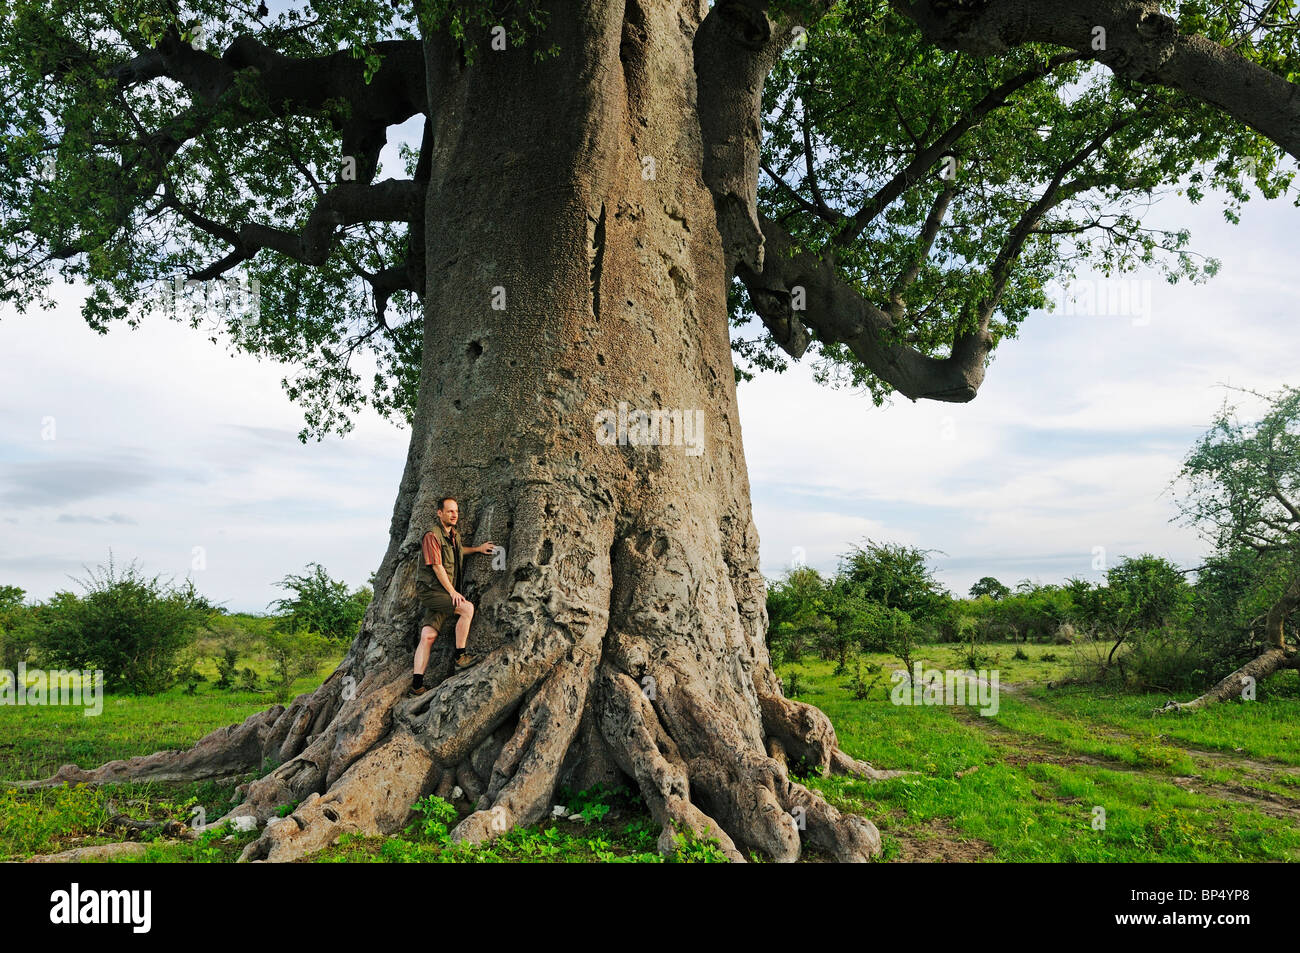 El hombre se halla en las raíces de un árbol baobab (Adansonia digitata), Planet baobab, Makgadikgadi Pan, Botswana, África Foto de stock